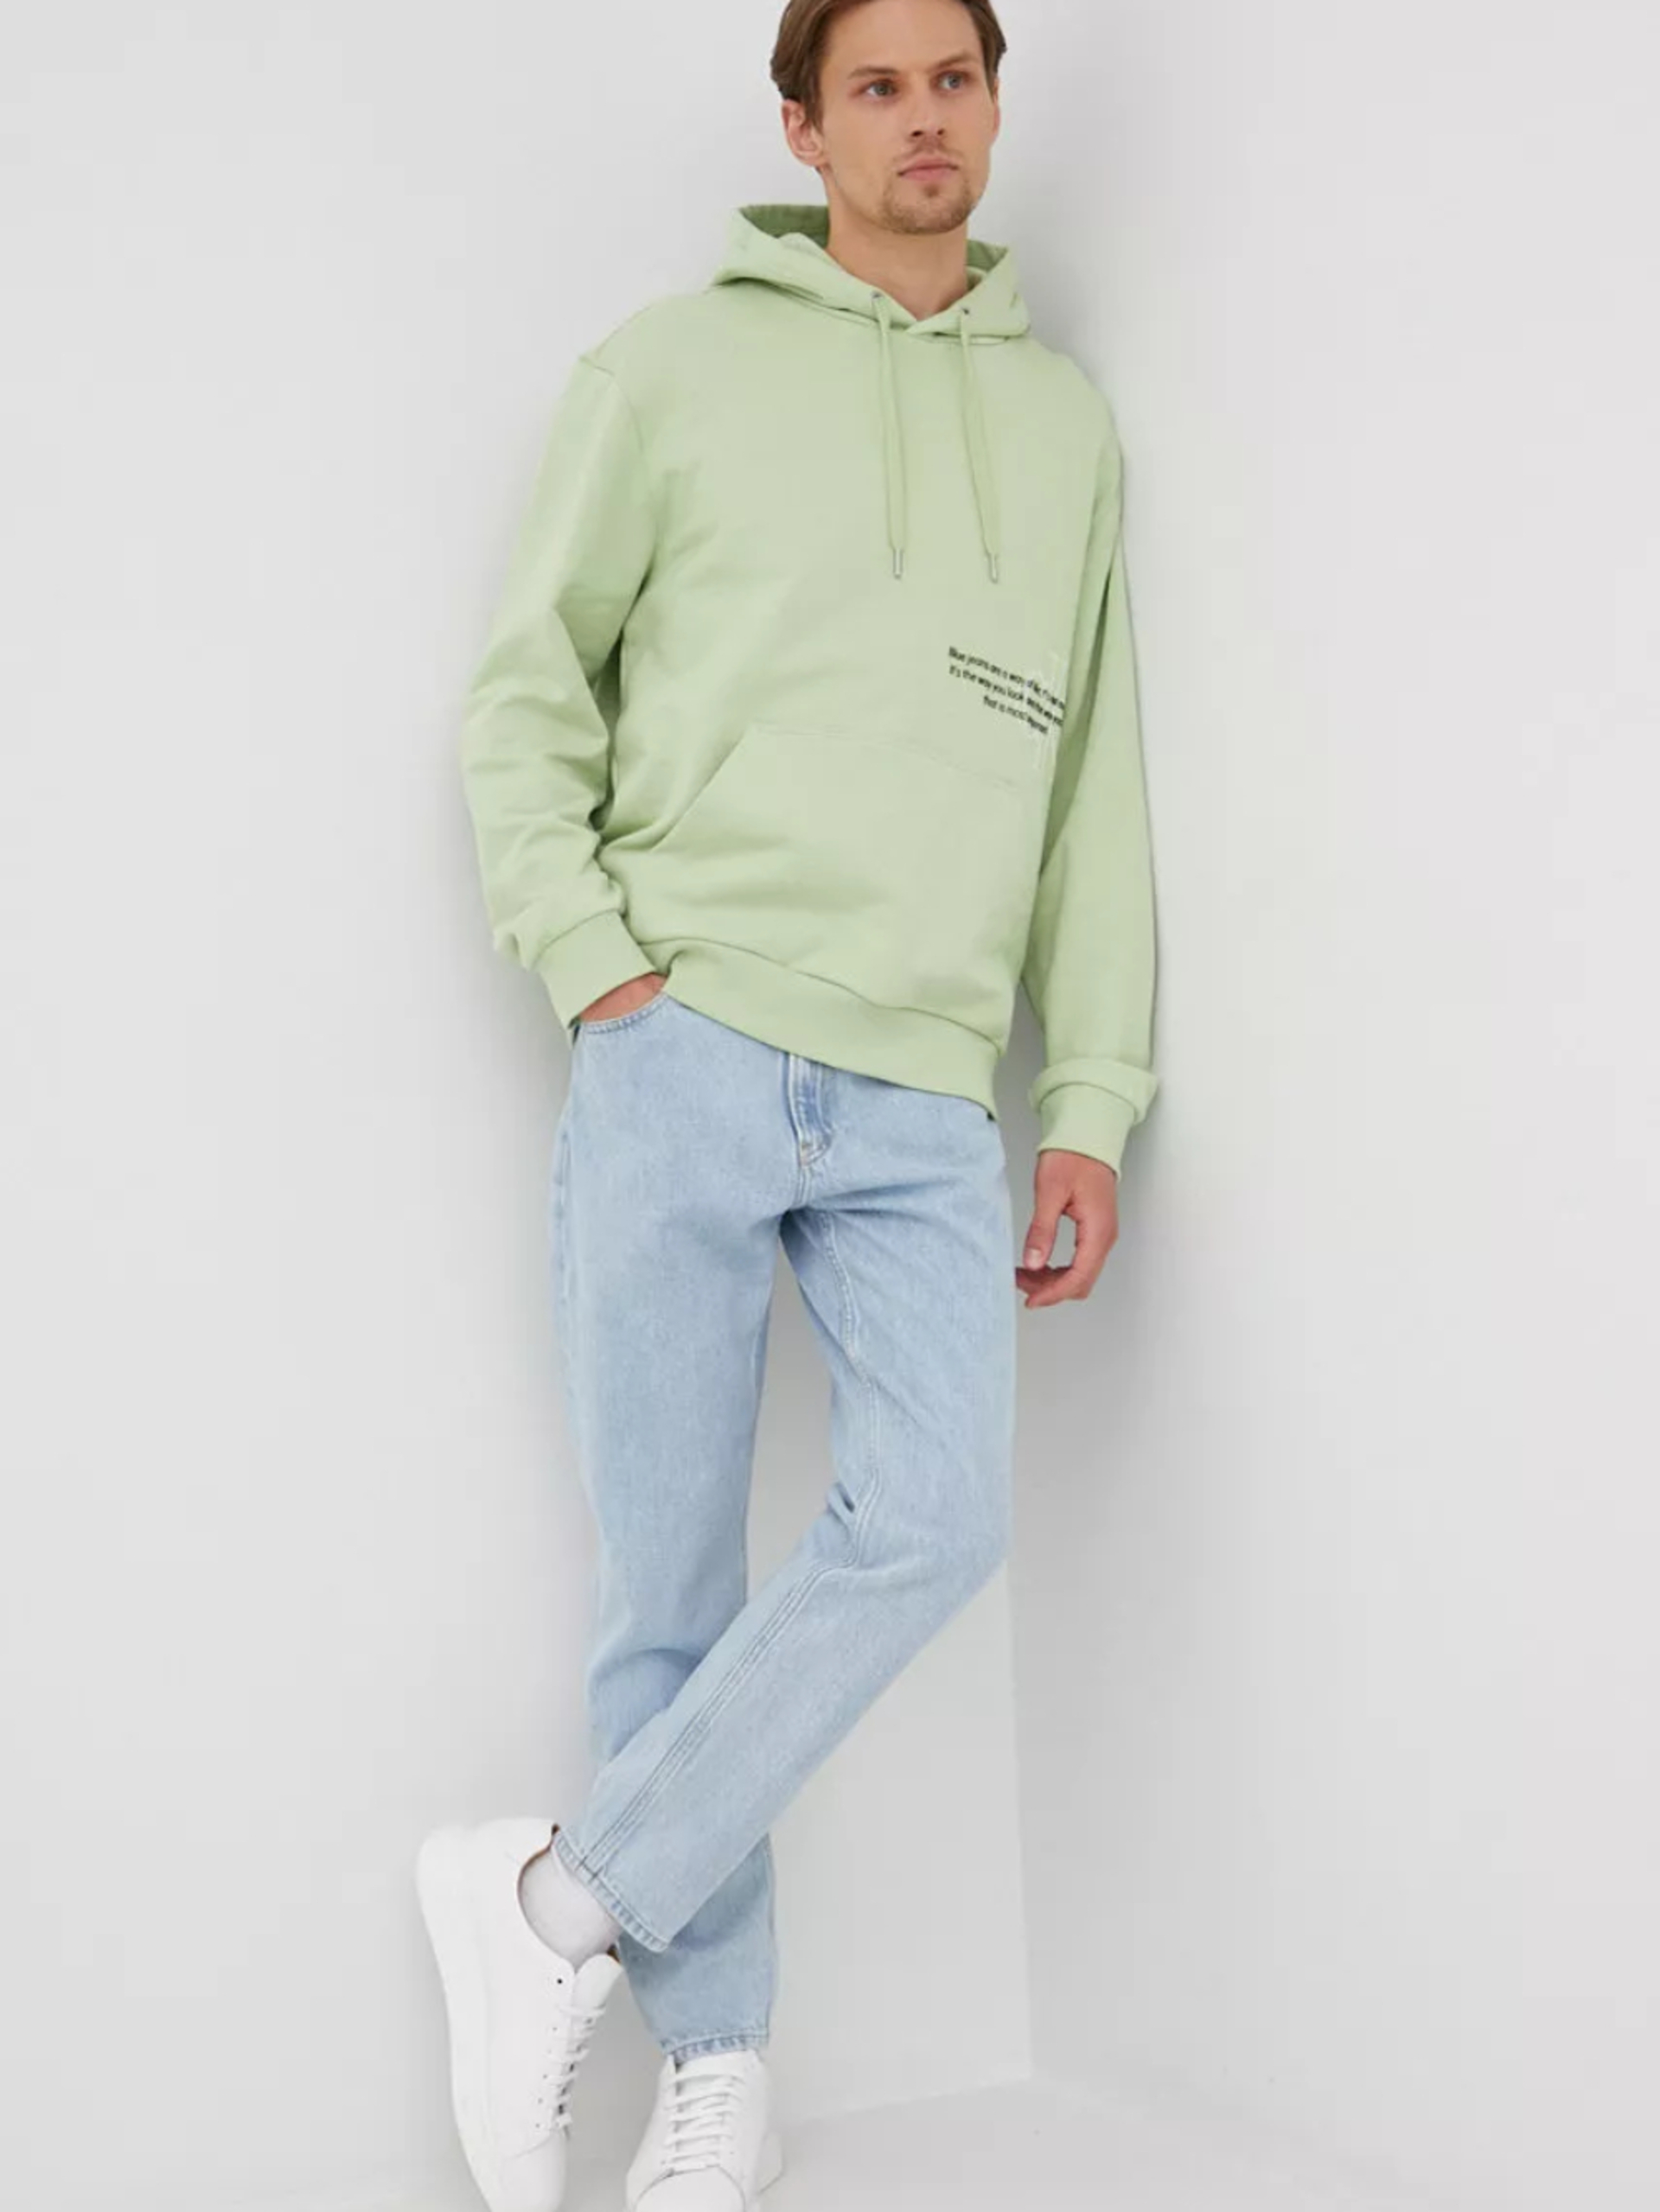 Calvin Klein pánská světle zelená mikina. - L (L99)